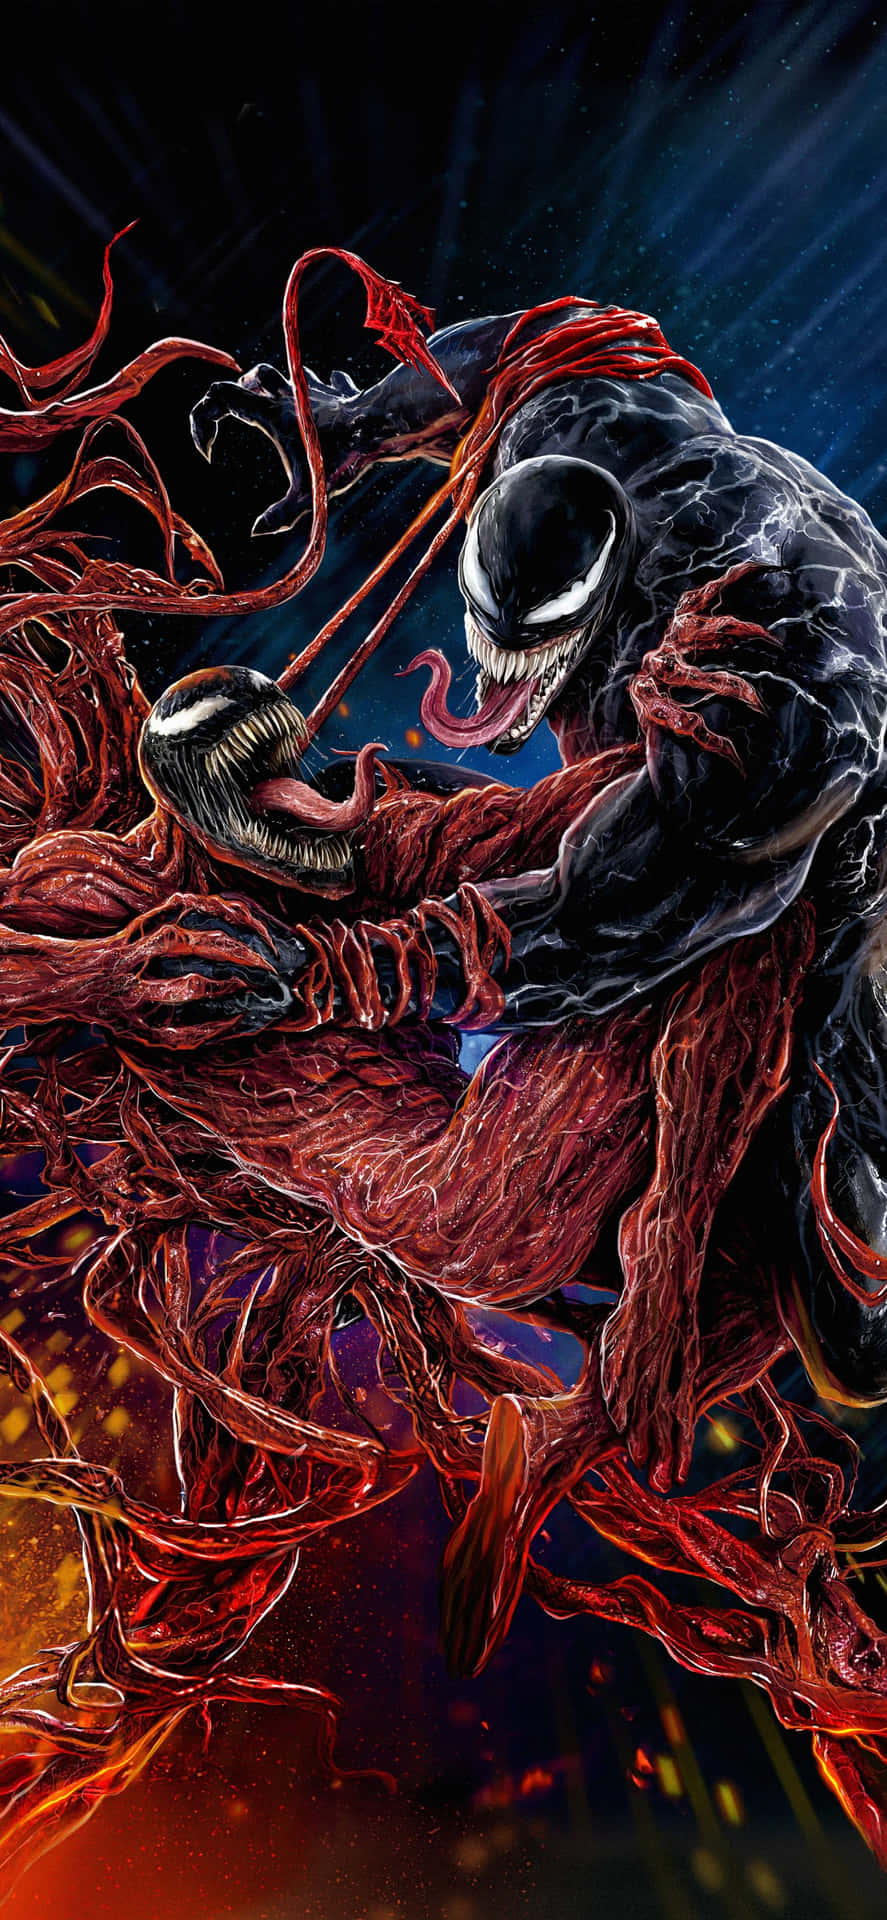 Venomkämpft Mit Einer Rot Gefärbten Kreatur. Wallpaper